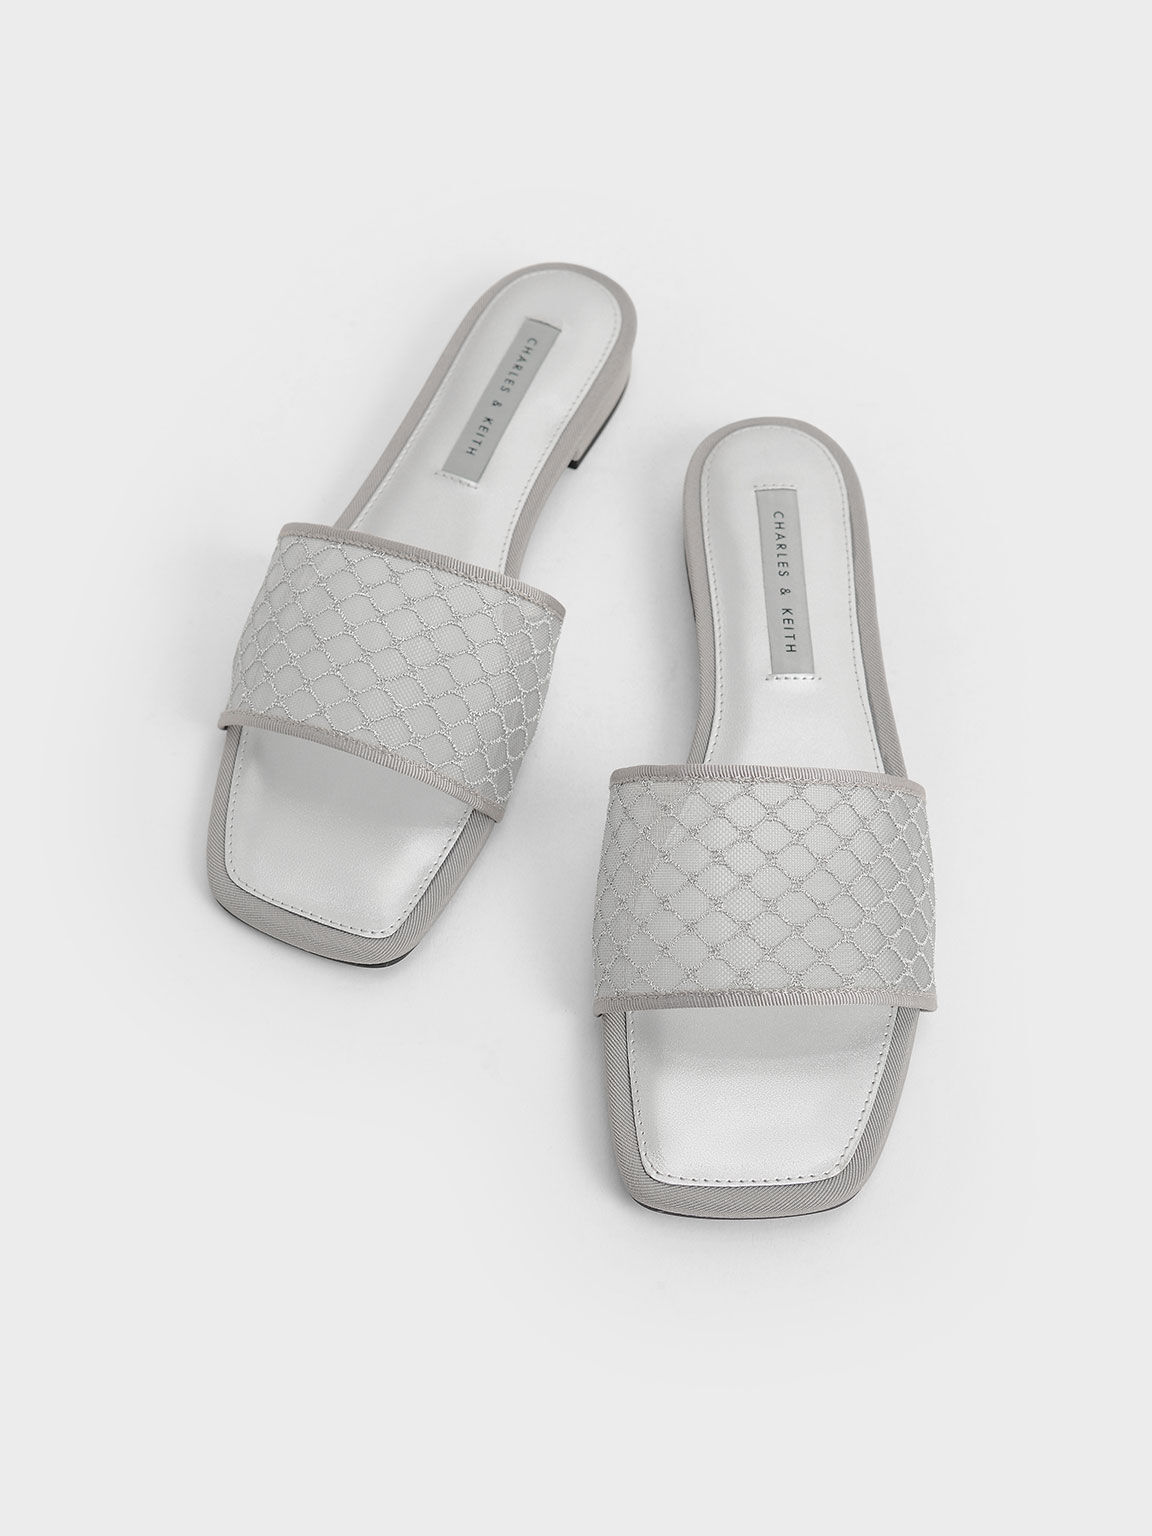 Mesh & Grosgrain Slide Sandals, Silver, hi-res